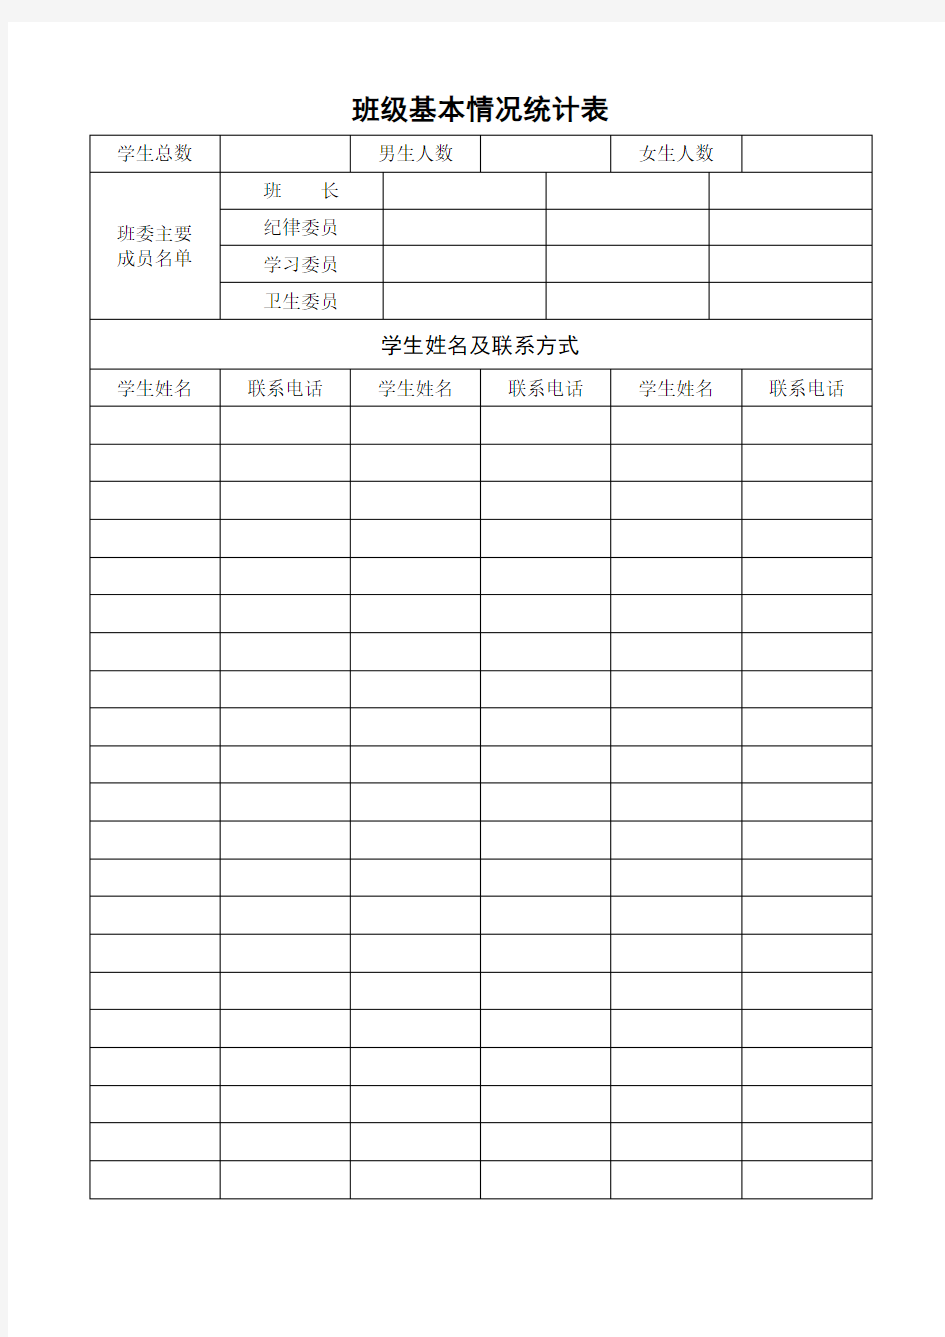 班主任工作手册、班级基本情况统计表